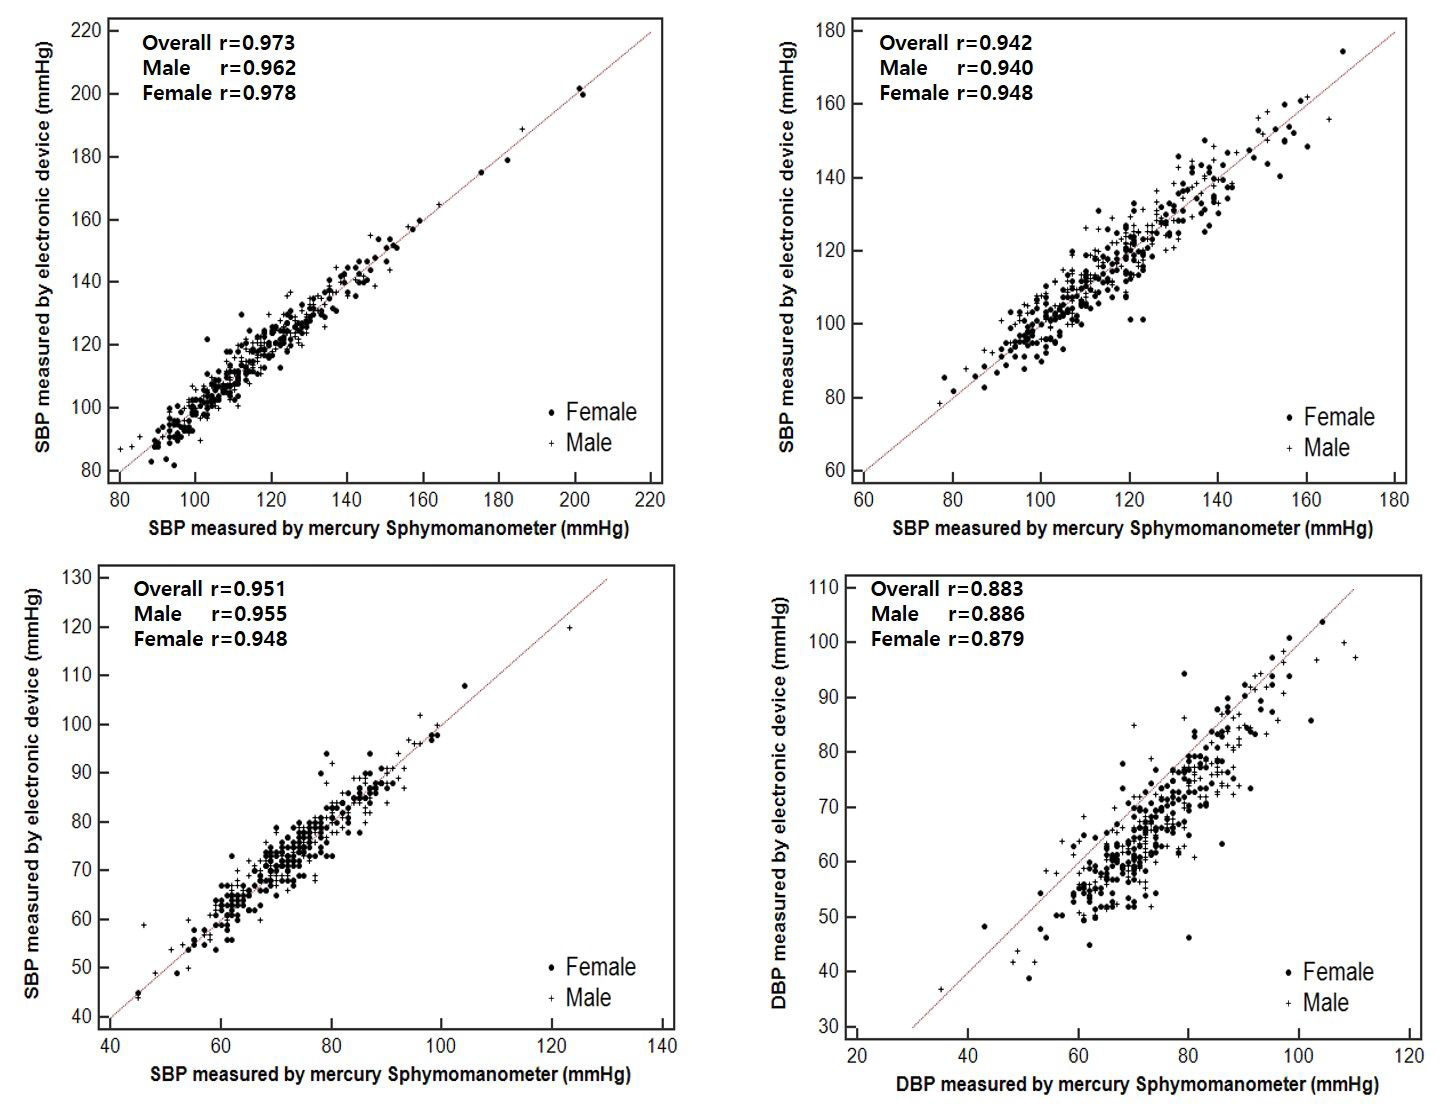 설명) 좌측 패널은 수동혈압계와 GL300군간의 비교이며 우측 패널은 수은 혈압계와 OMRON907군간의 비교임. 전반적으로 GL300의 상관계수가 높고 특히 확장기혈압의 상관계 수의 차이가 두드러진다.